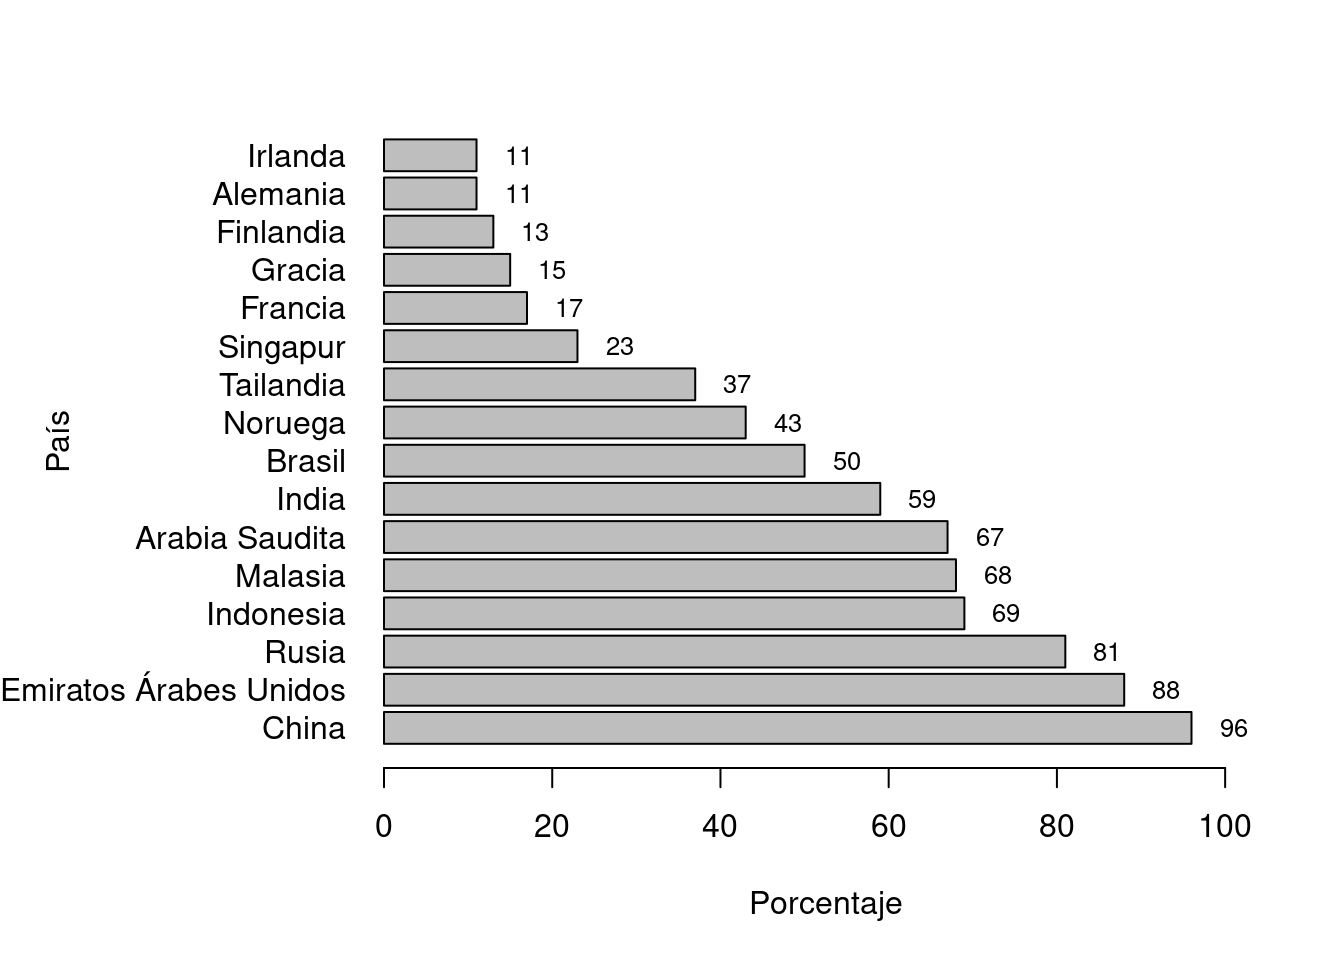 Participación pública en las 10 principales empresas por país, años 2010-2011